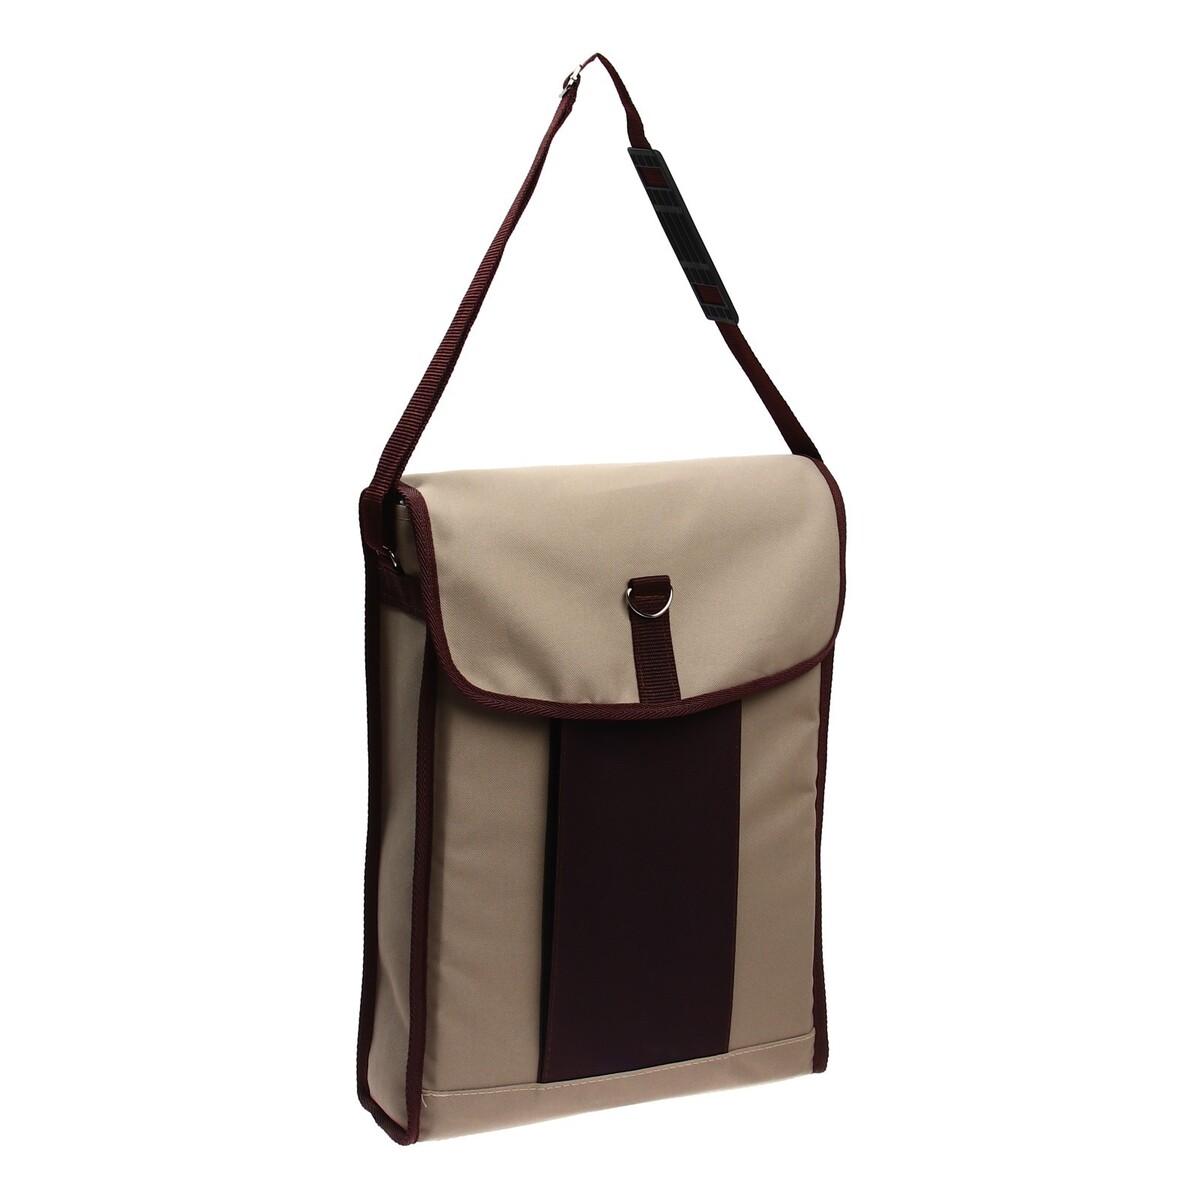 Сумка для планшета формата а3, 420 х 300 х 80 мм, бежевый/коричневый, estado сумка женская на застежке textura косметичка коричневый